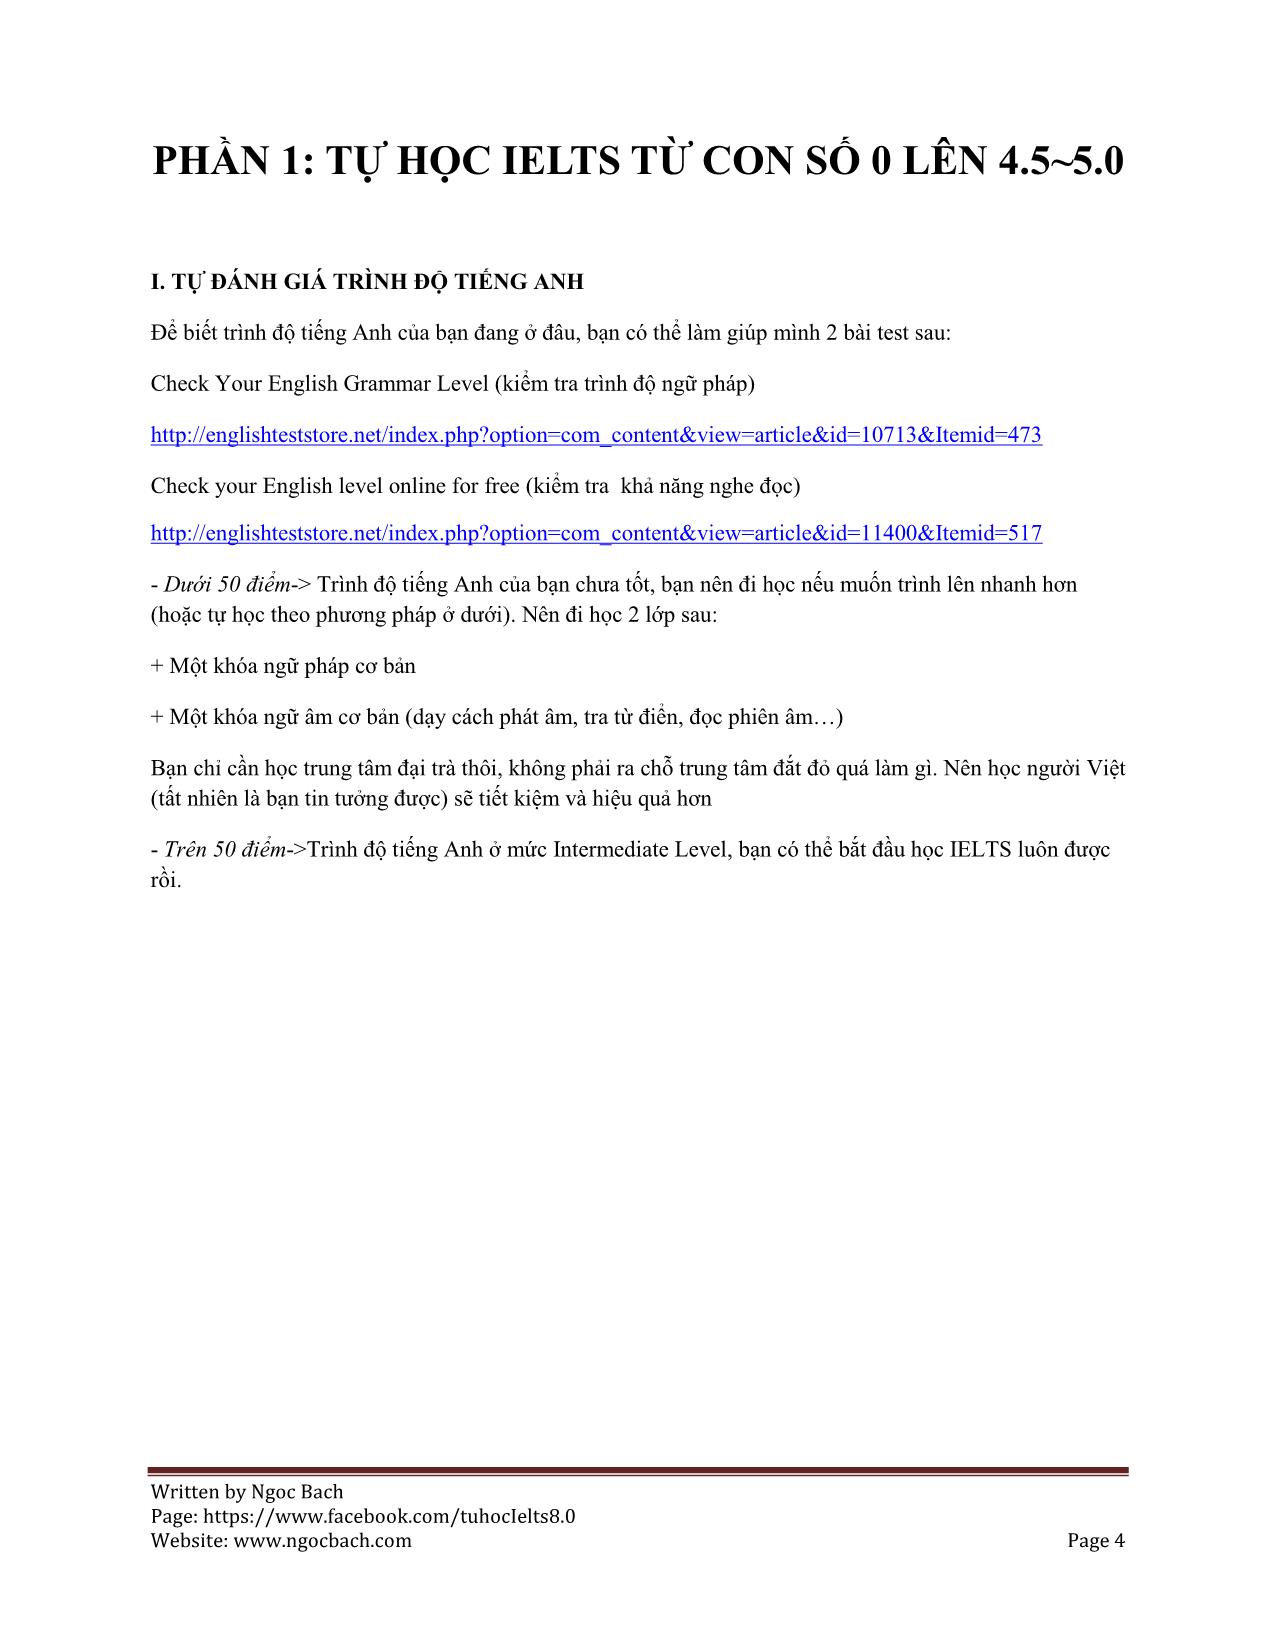 Bí kíp tự học Ielts từ con số 0 lên 8.0 - 2015 by ngoc bach trang 4